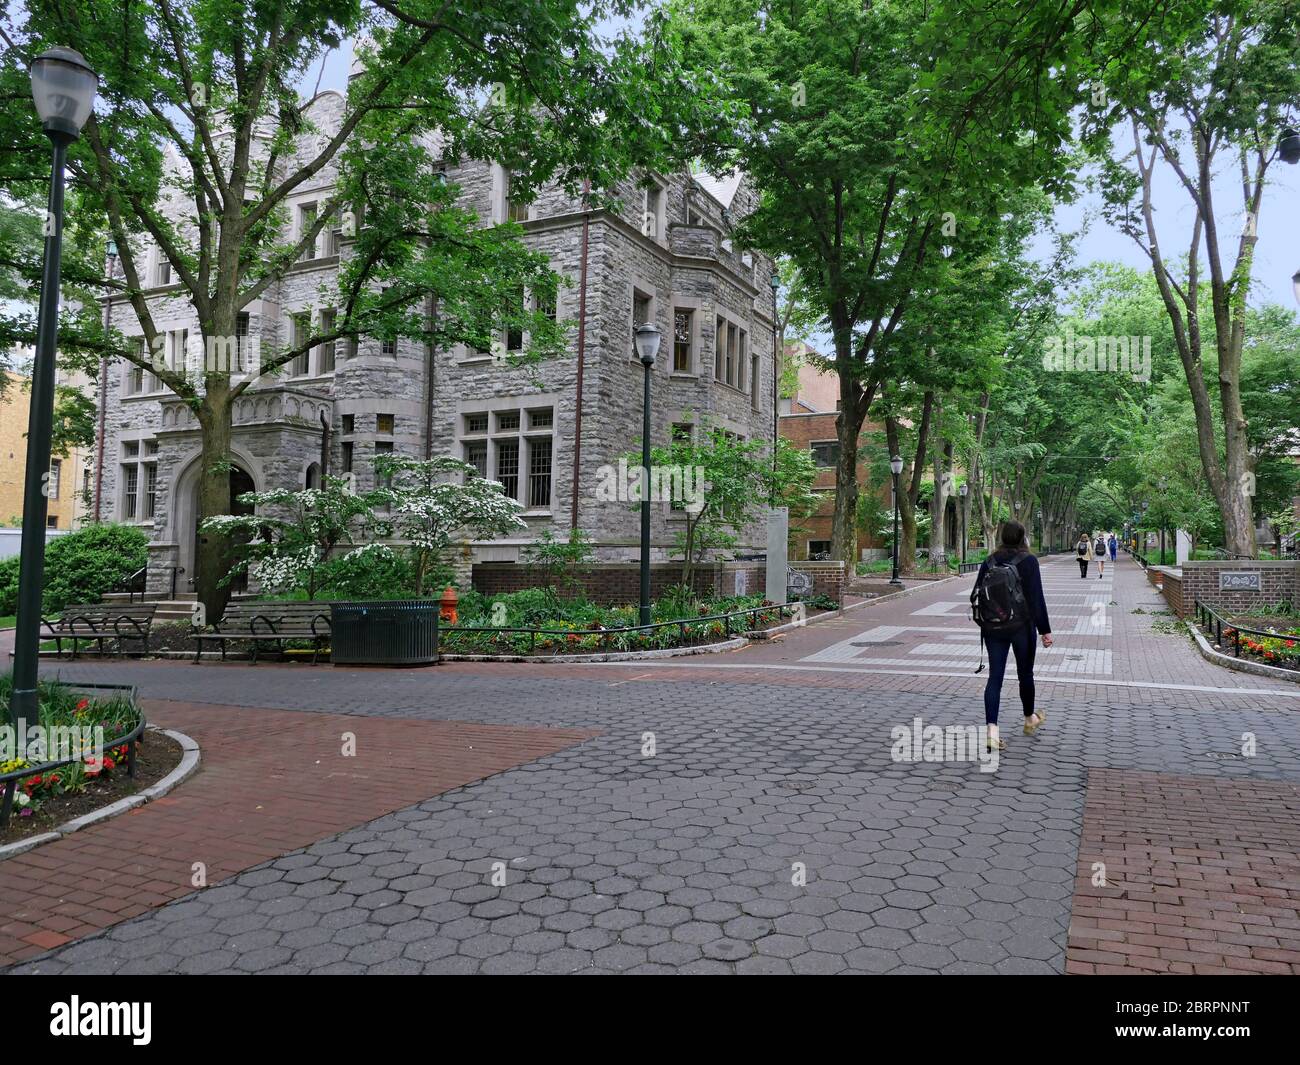 Le campus de l'Université de Pennsylvanie est très vert et ombragé, comme vu dans cette vue le long de Locust Walk. Banque D'Images